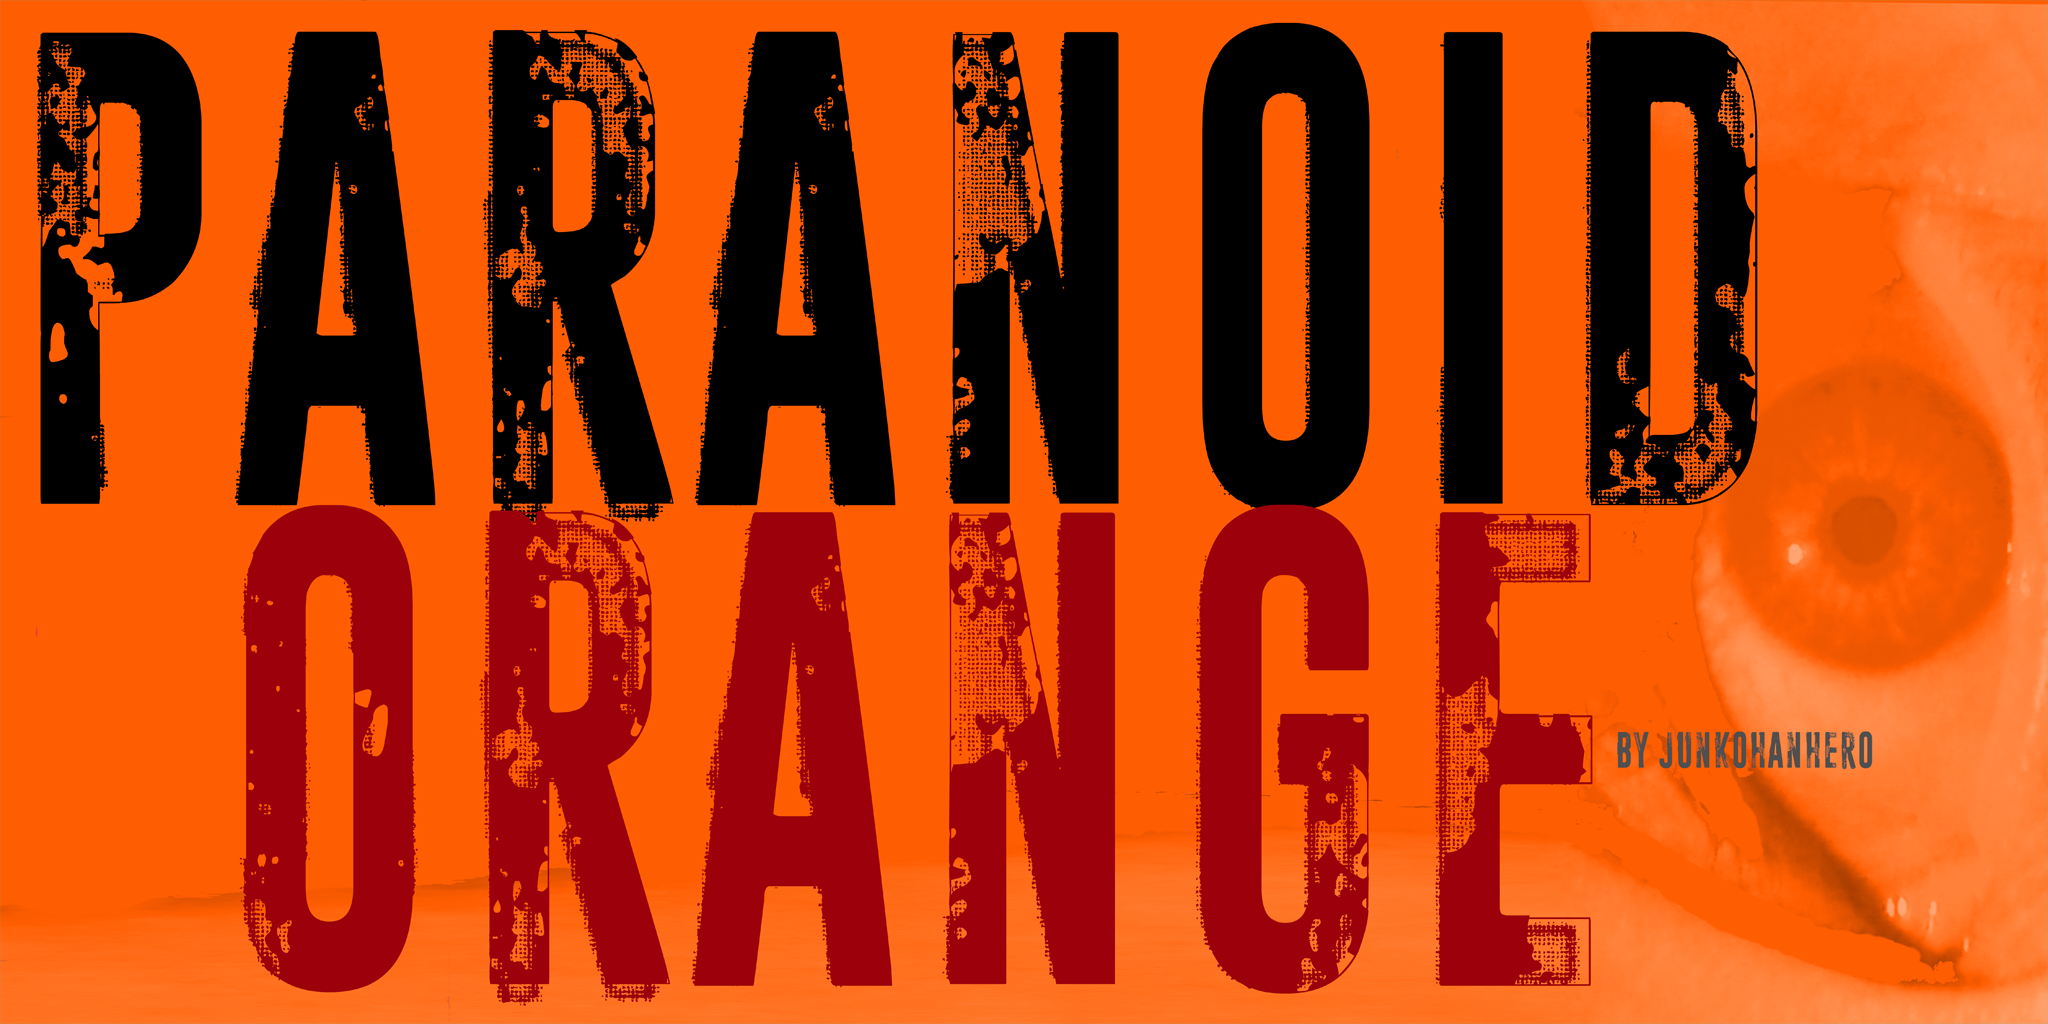 Paranoid Orange